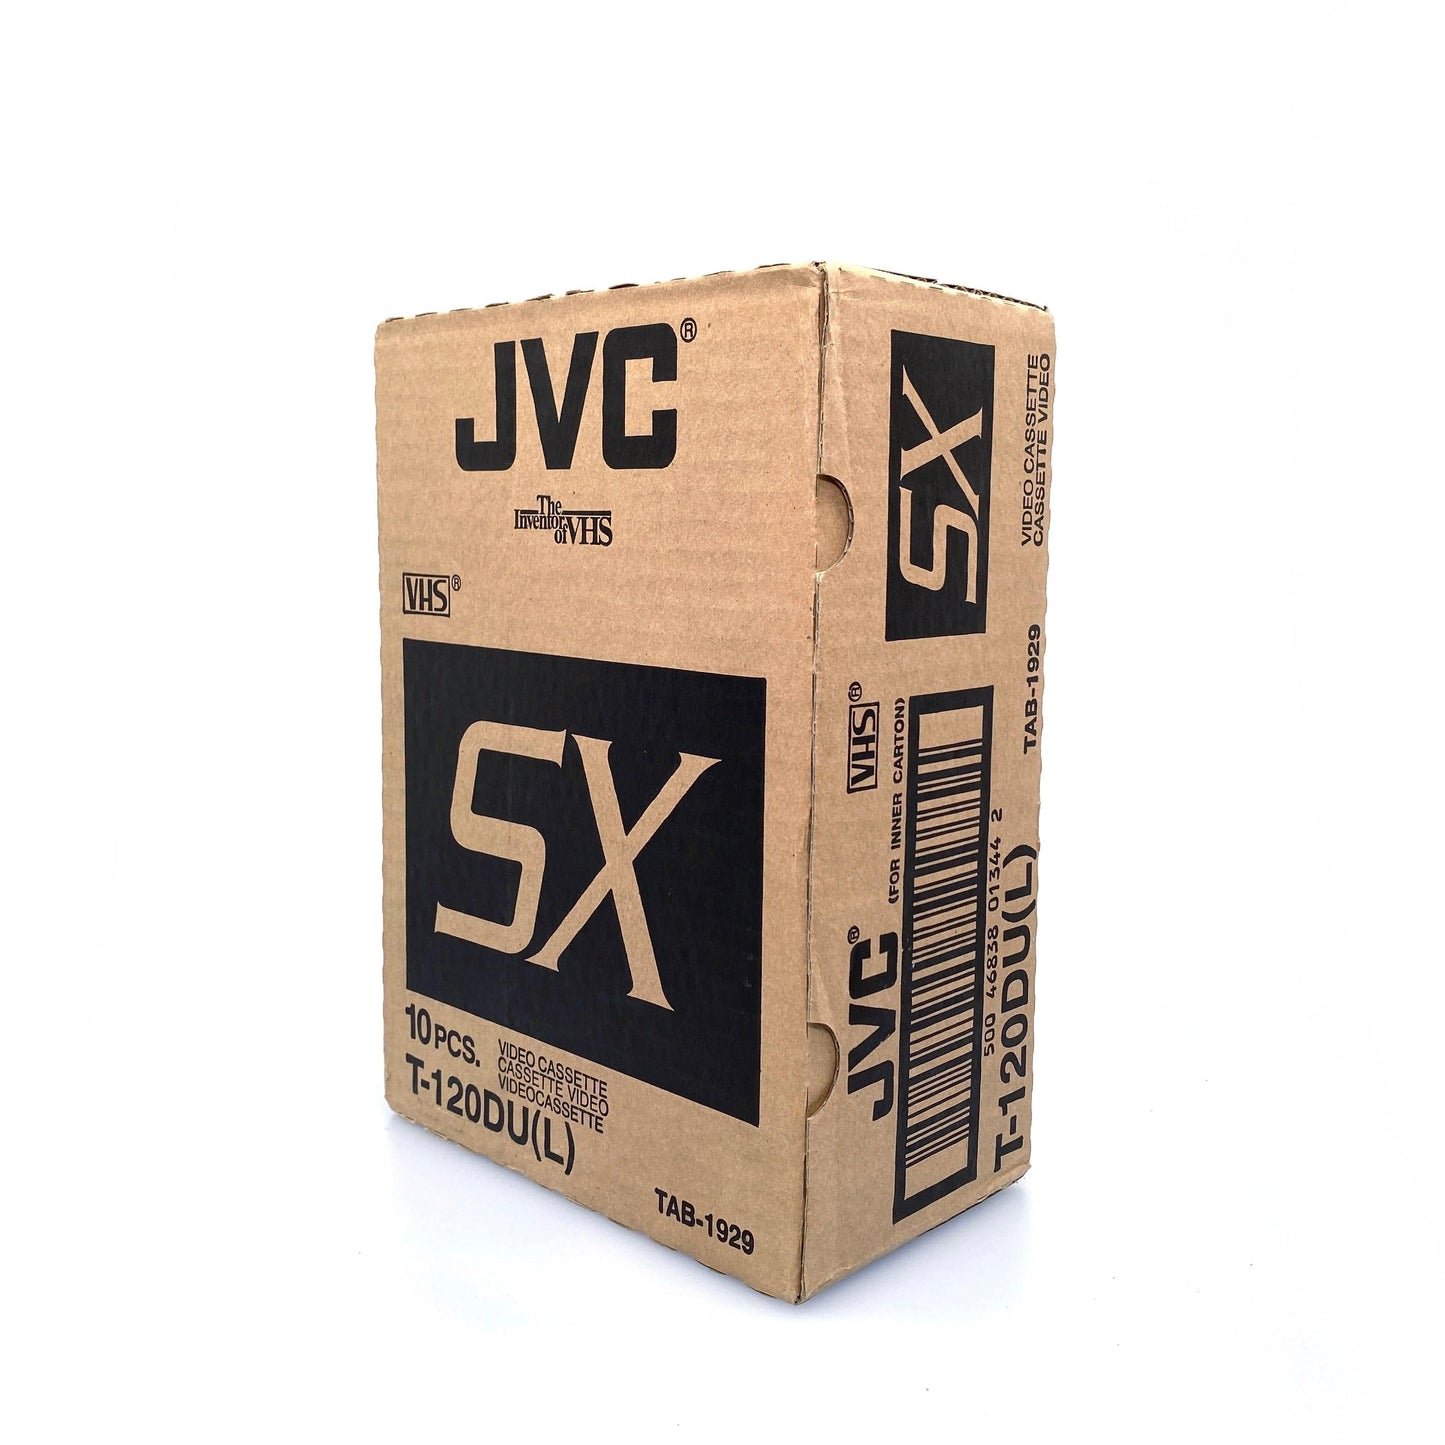 (10) JVC T-120DU(L) SX 6 Hour Video Cassette Tape NEW BACKSTOCK